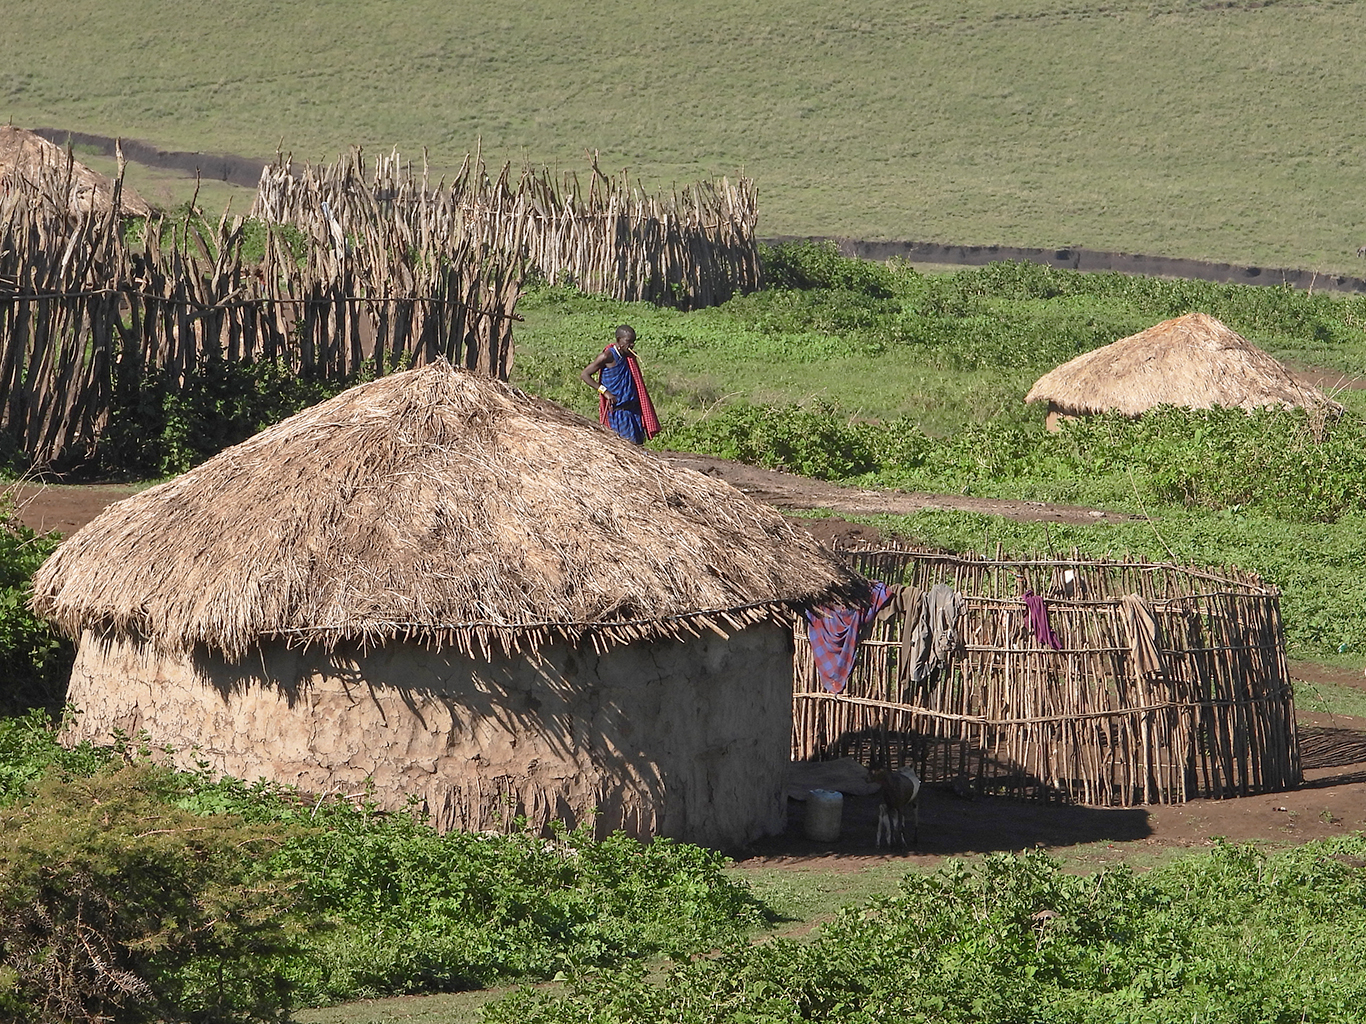 Tradiční masajské obydlí uplácané z hlíny má kruhovitý tvar